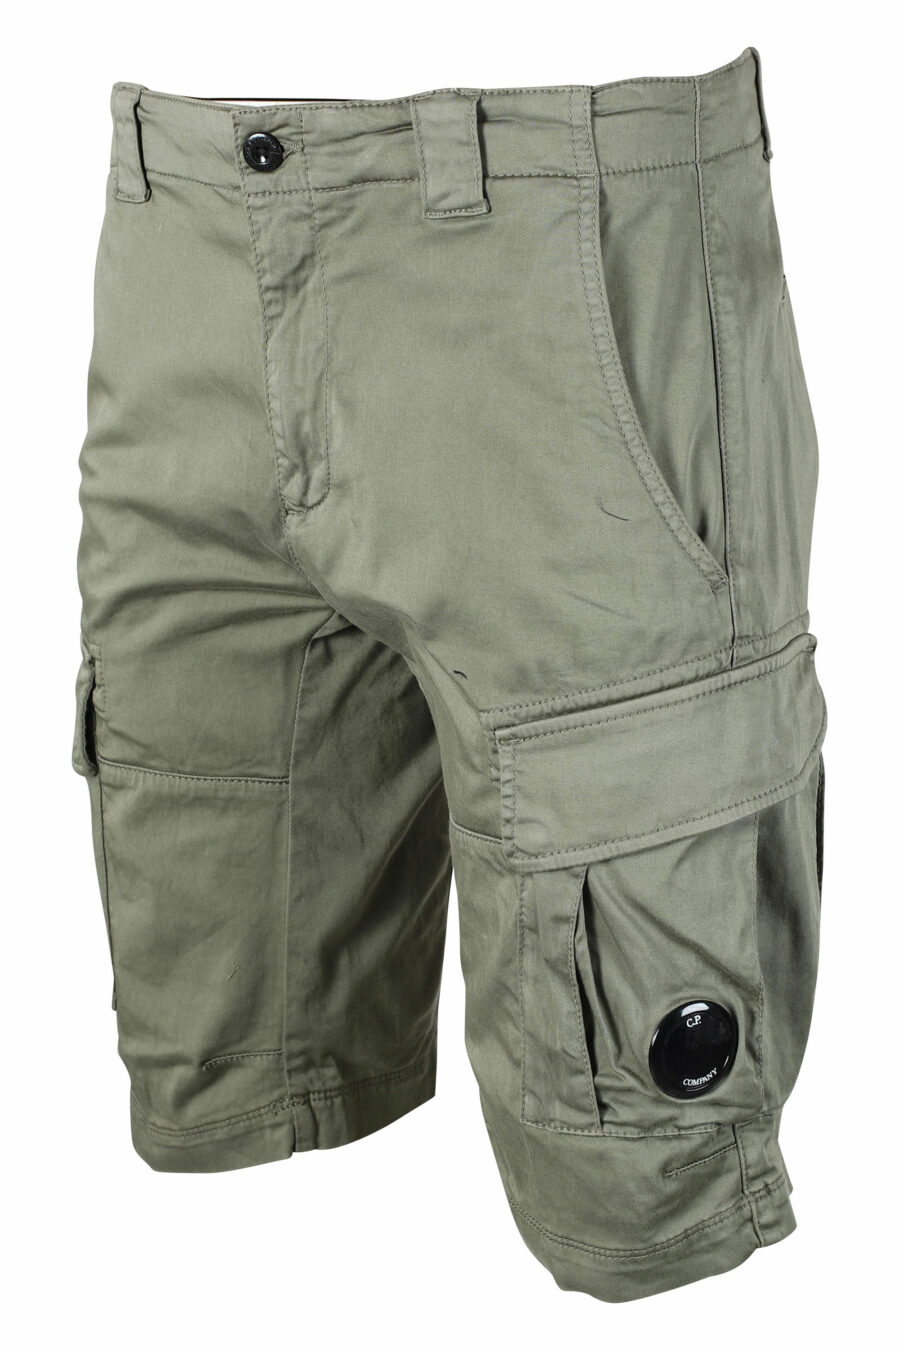 Pantalón corto verde militar estilo cargo con minilogo circular - IMG 9498